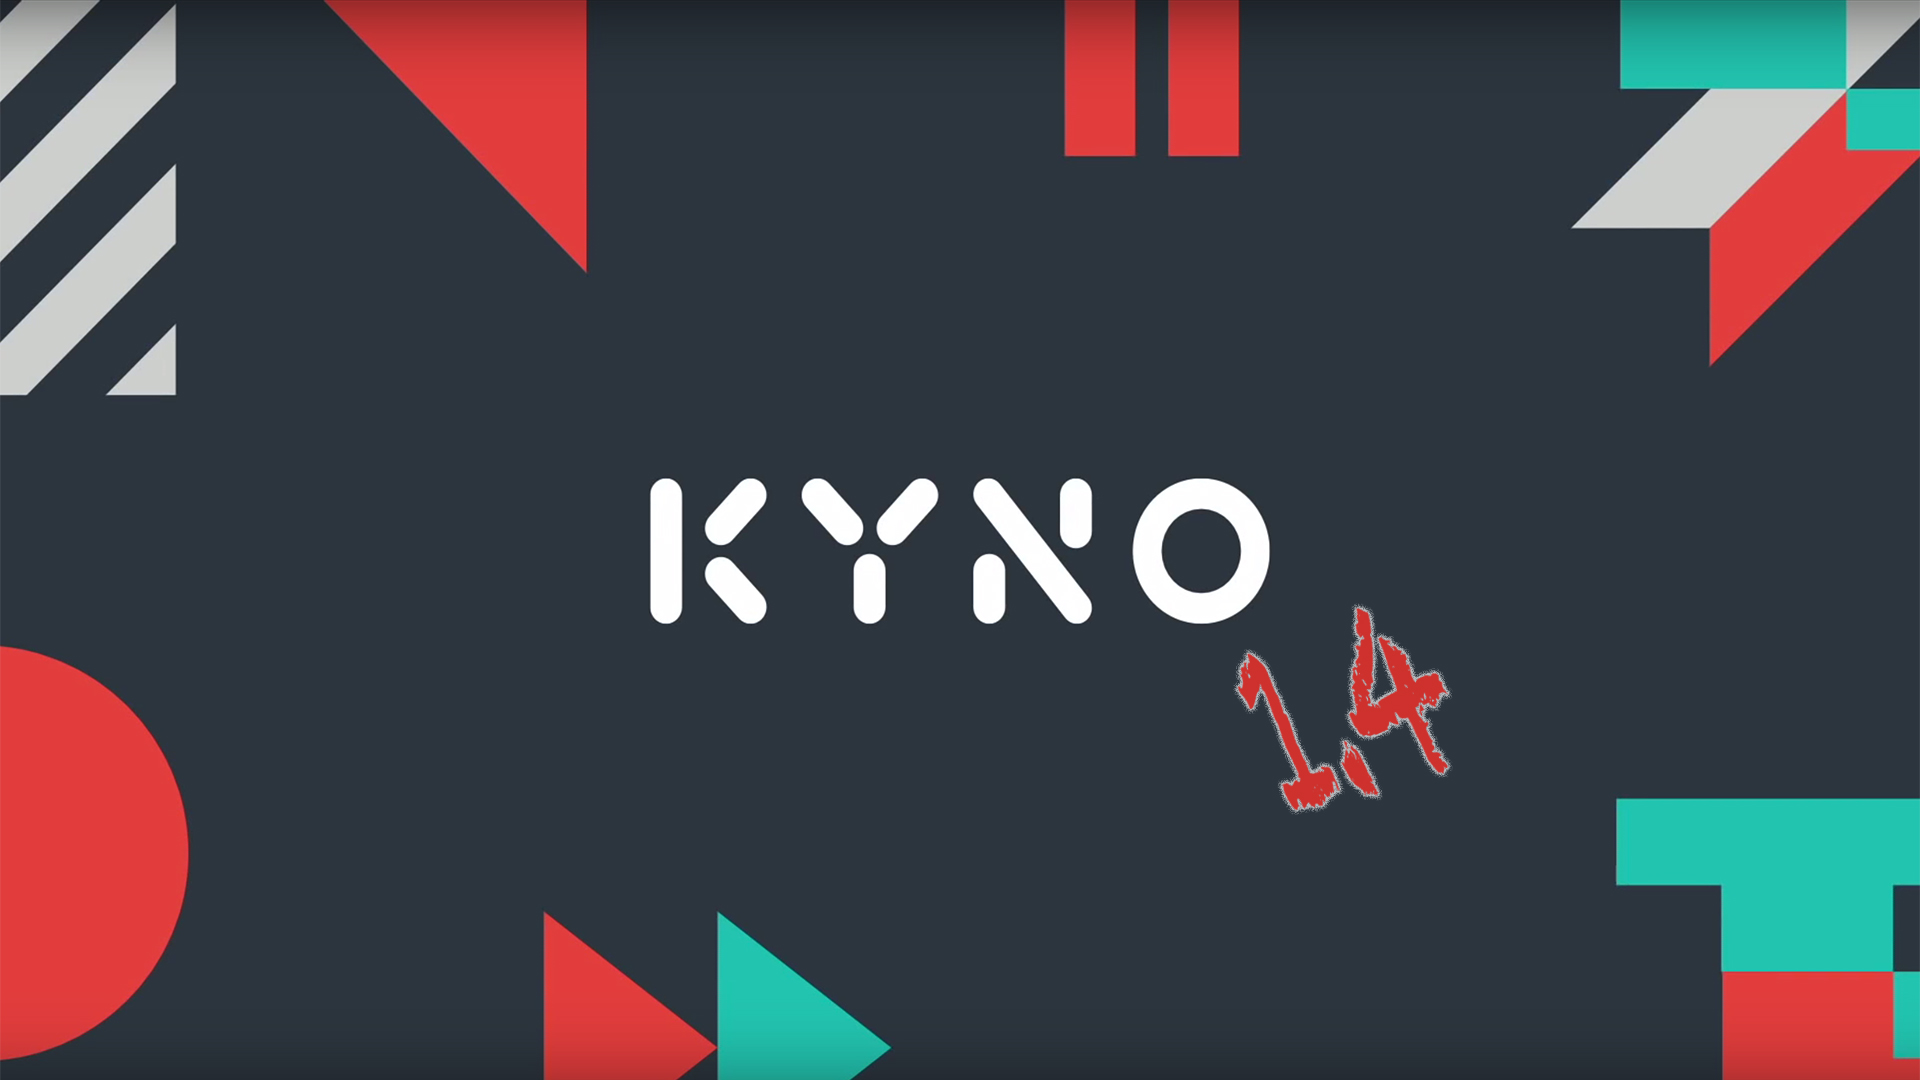 映像素材の総合管理ソフトKyno1.4がリリース － 新たにWindowsをサポート